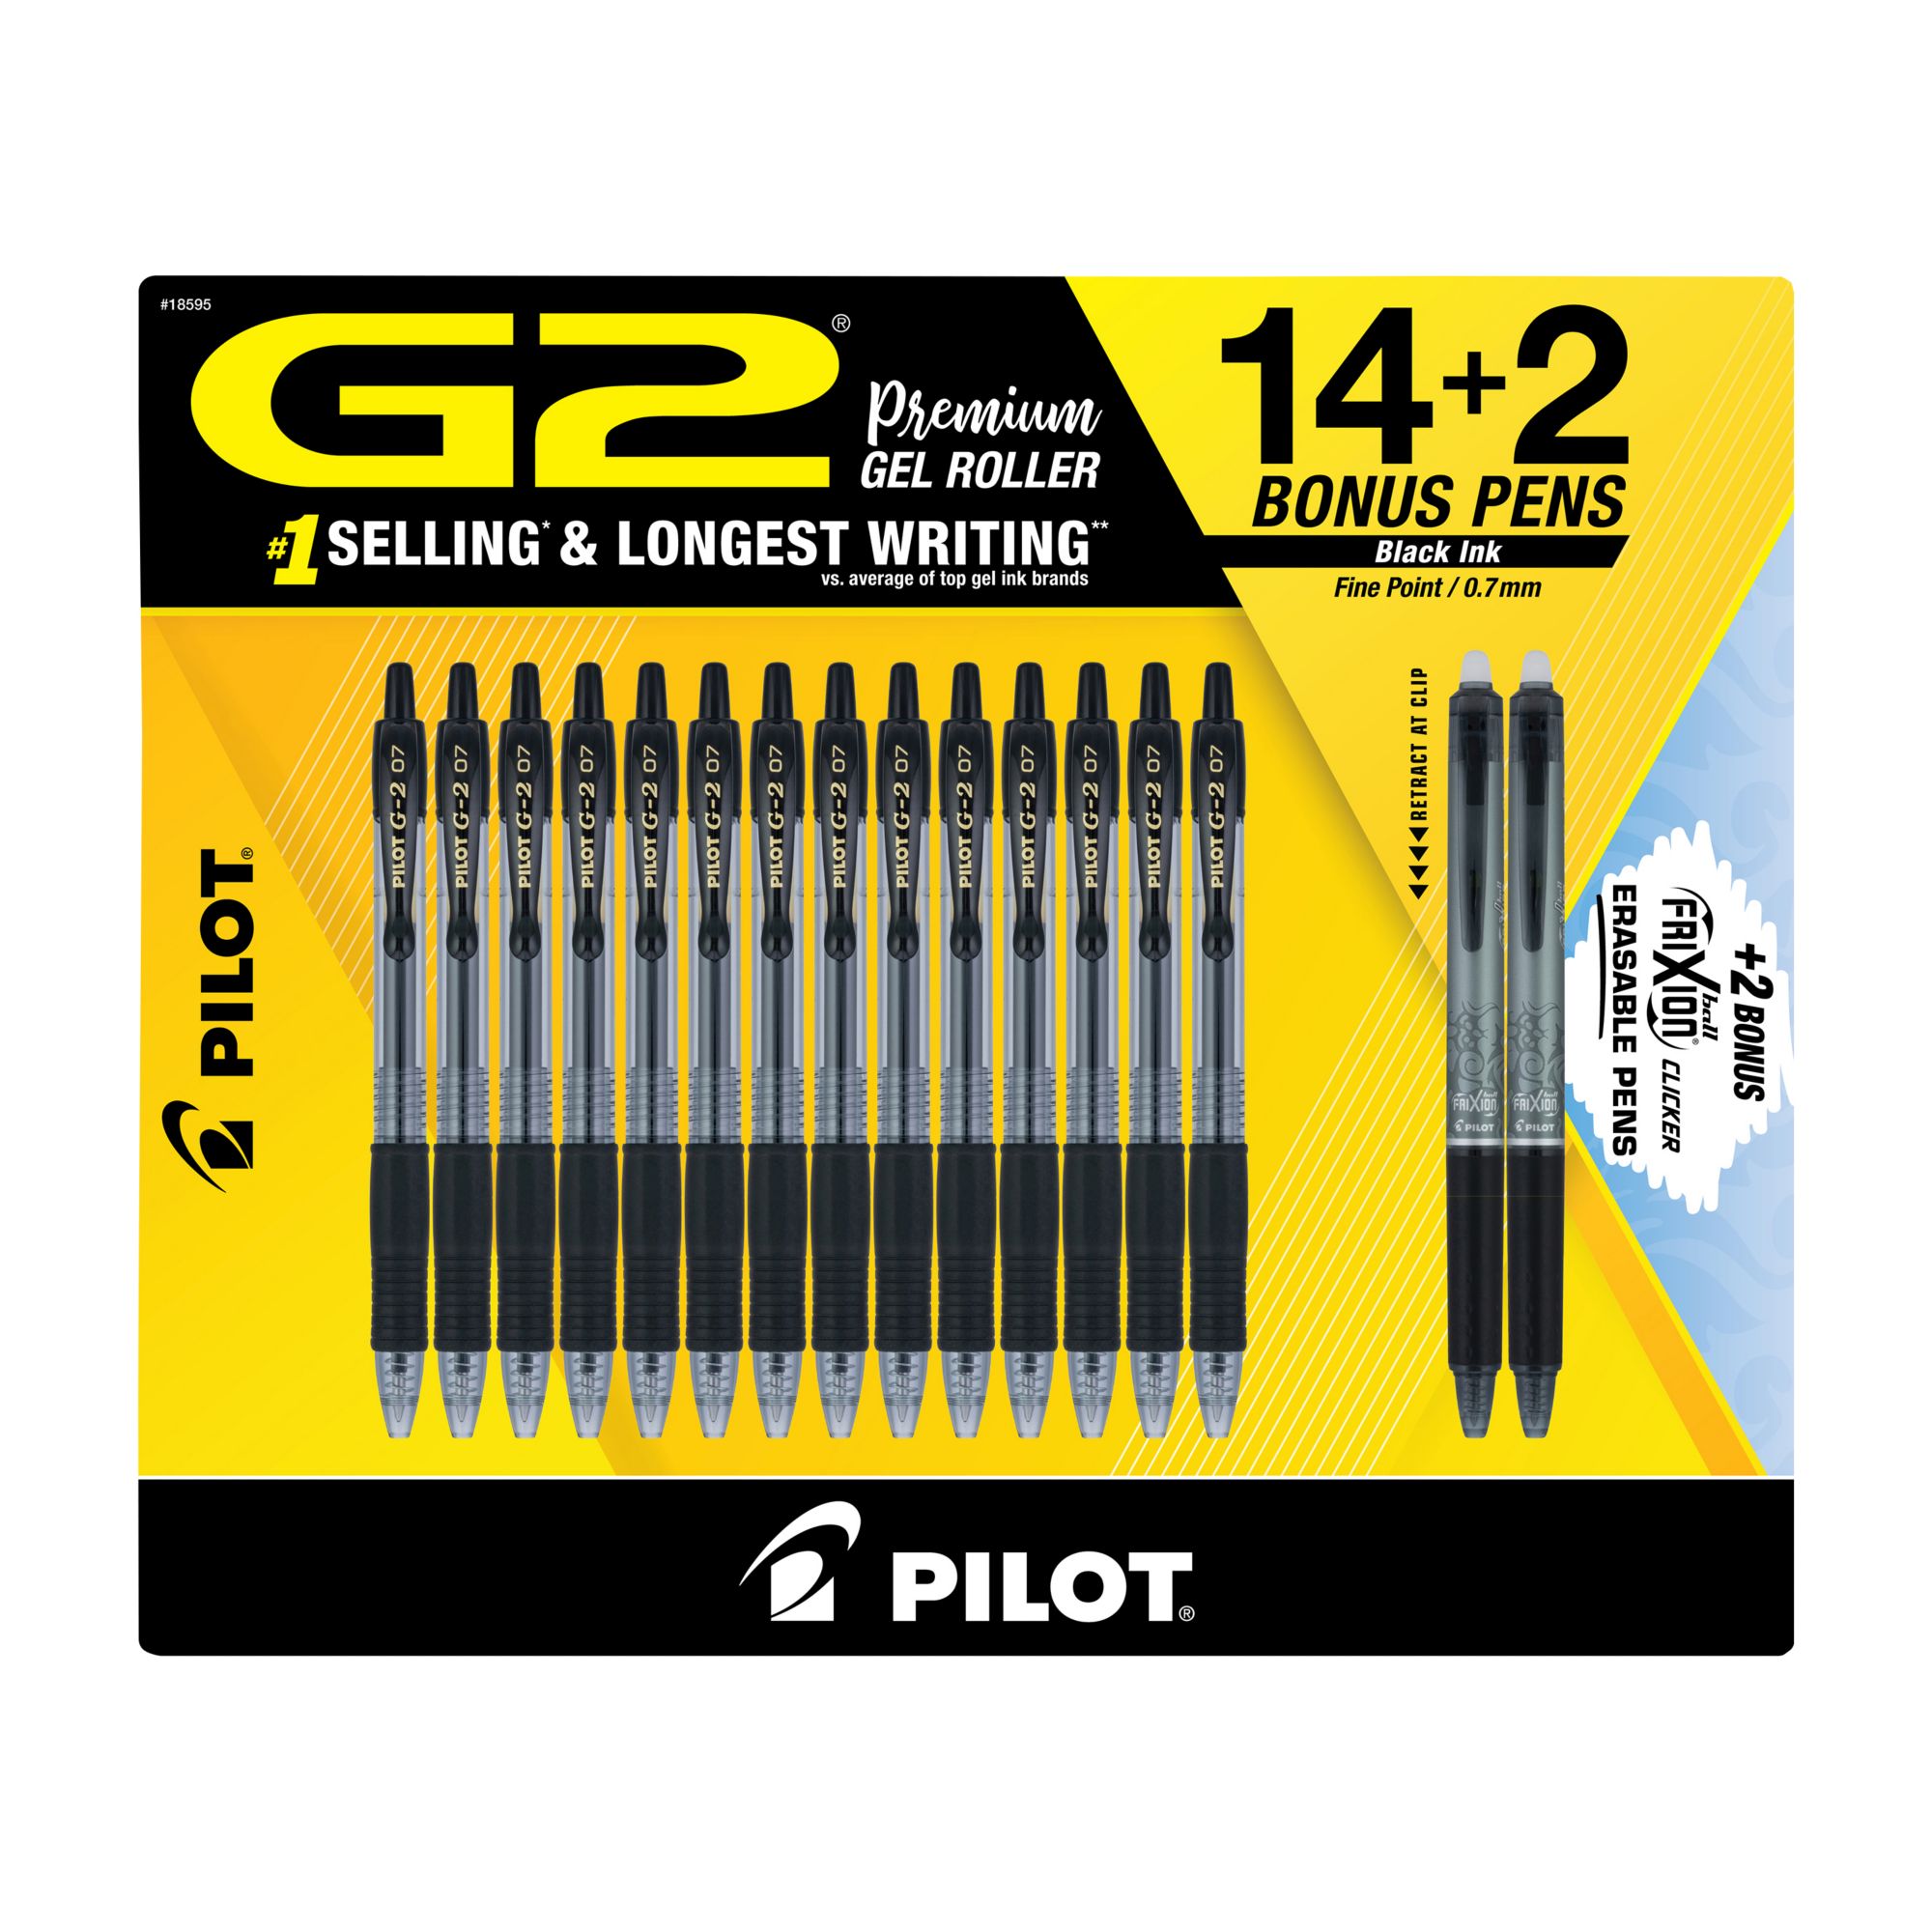 Pilot FriXion Erasable Gel Pens, 8 ct. - Assorted Colors